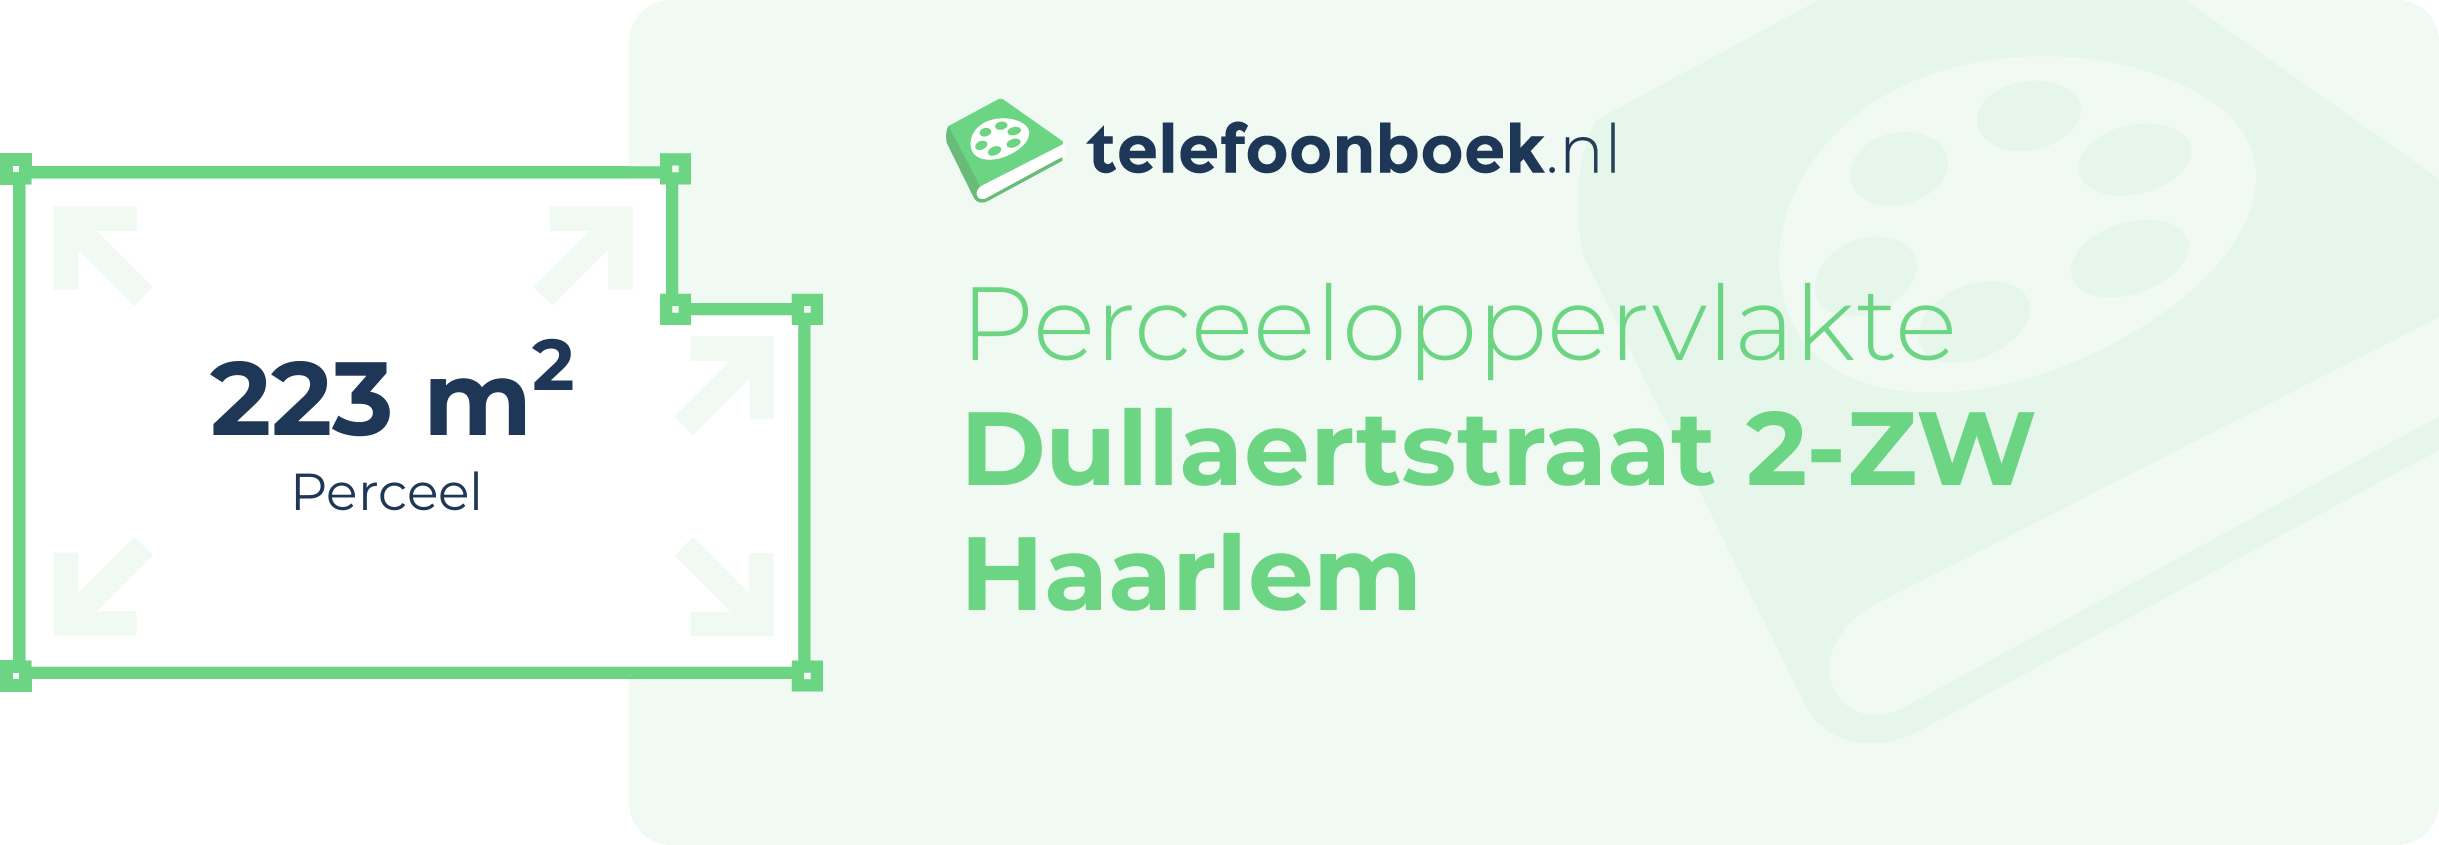 Perceeloppervlakte Dullaertstraat 2-ZW Haarlem